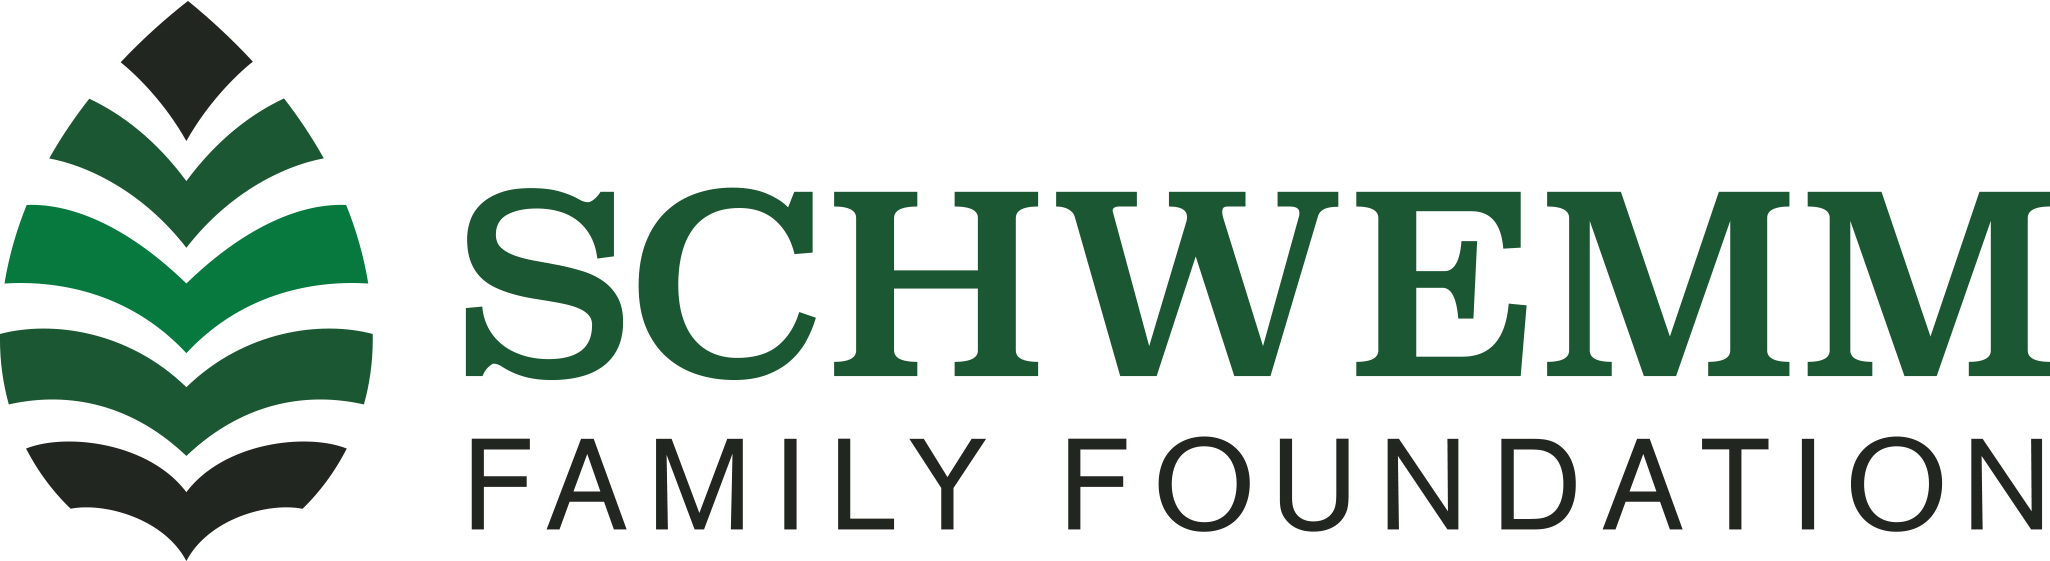 Schwemm Family Foundation logo